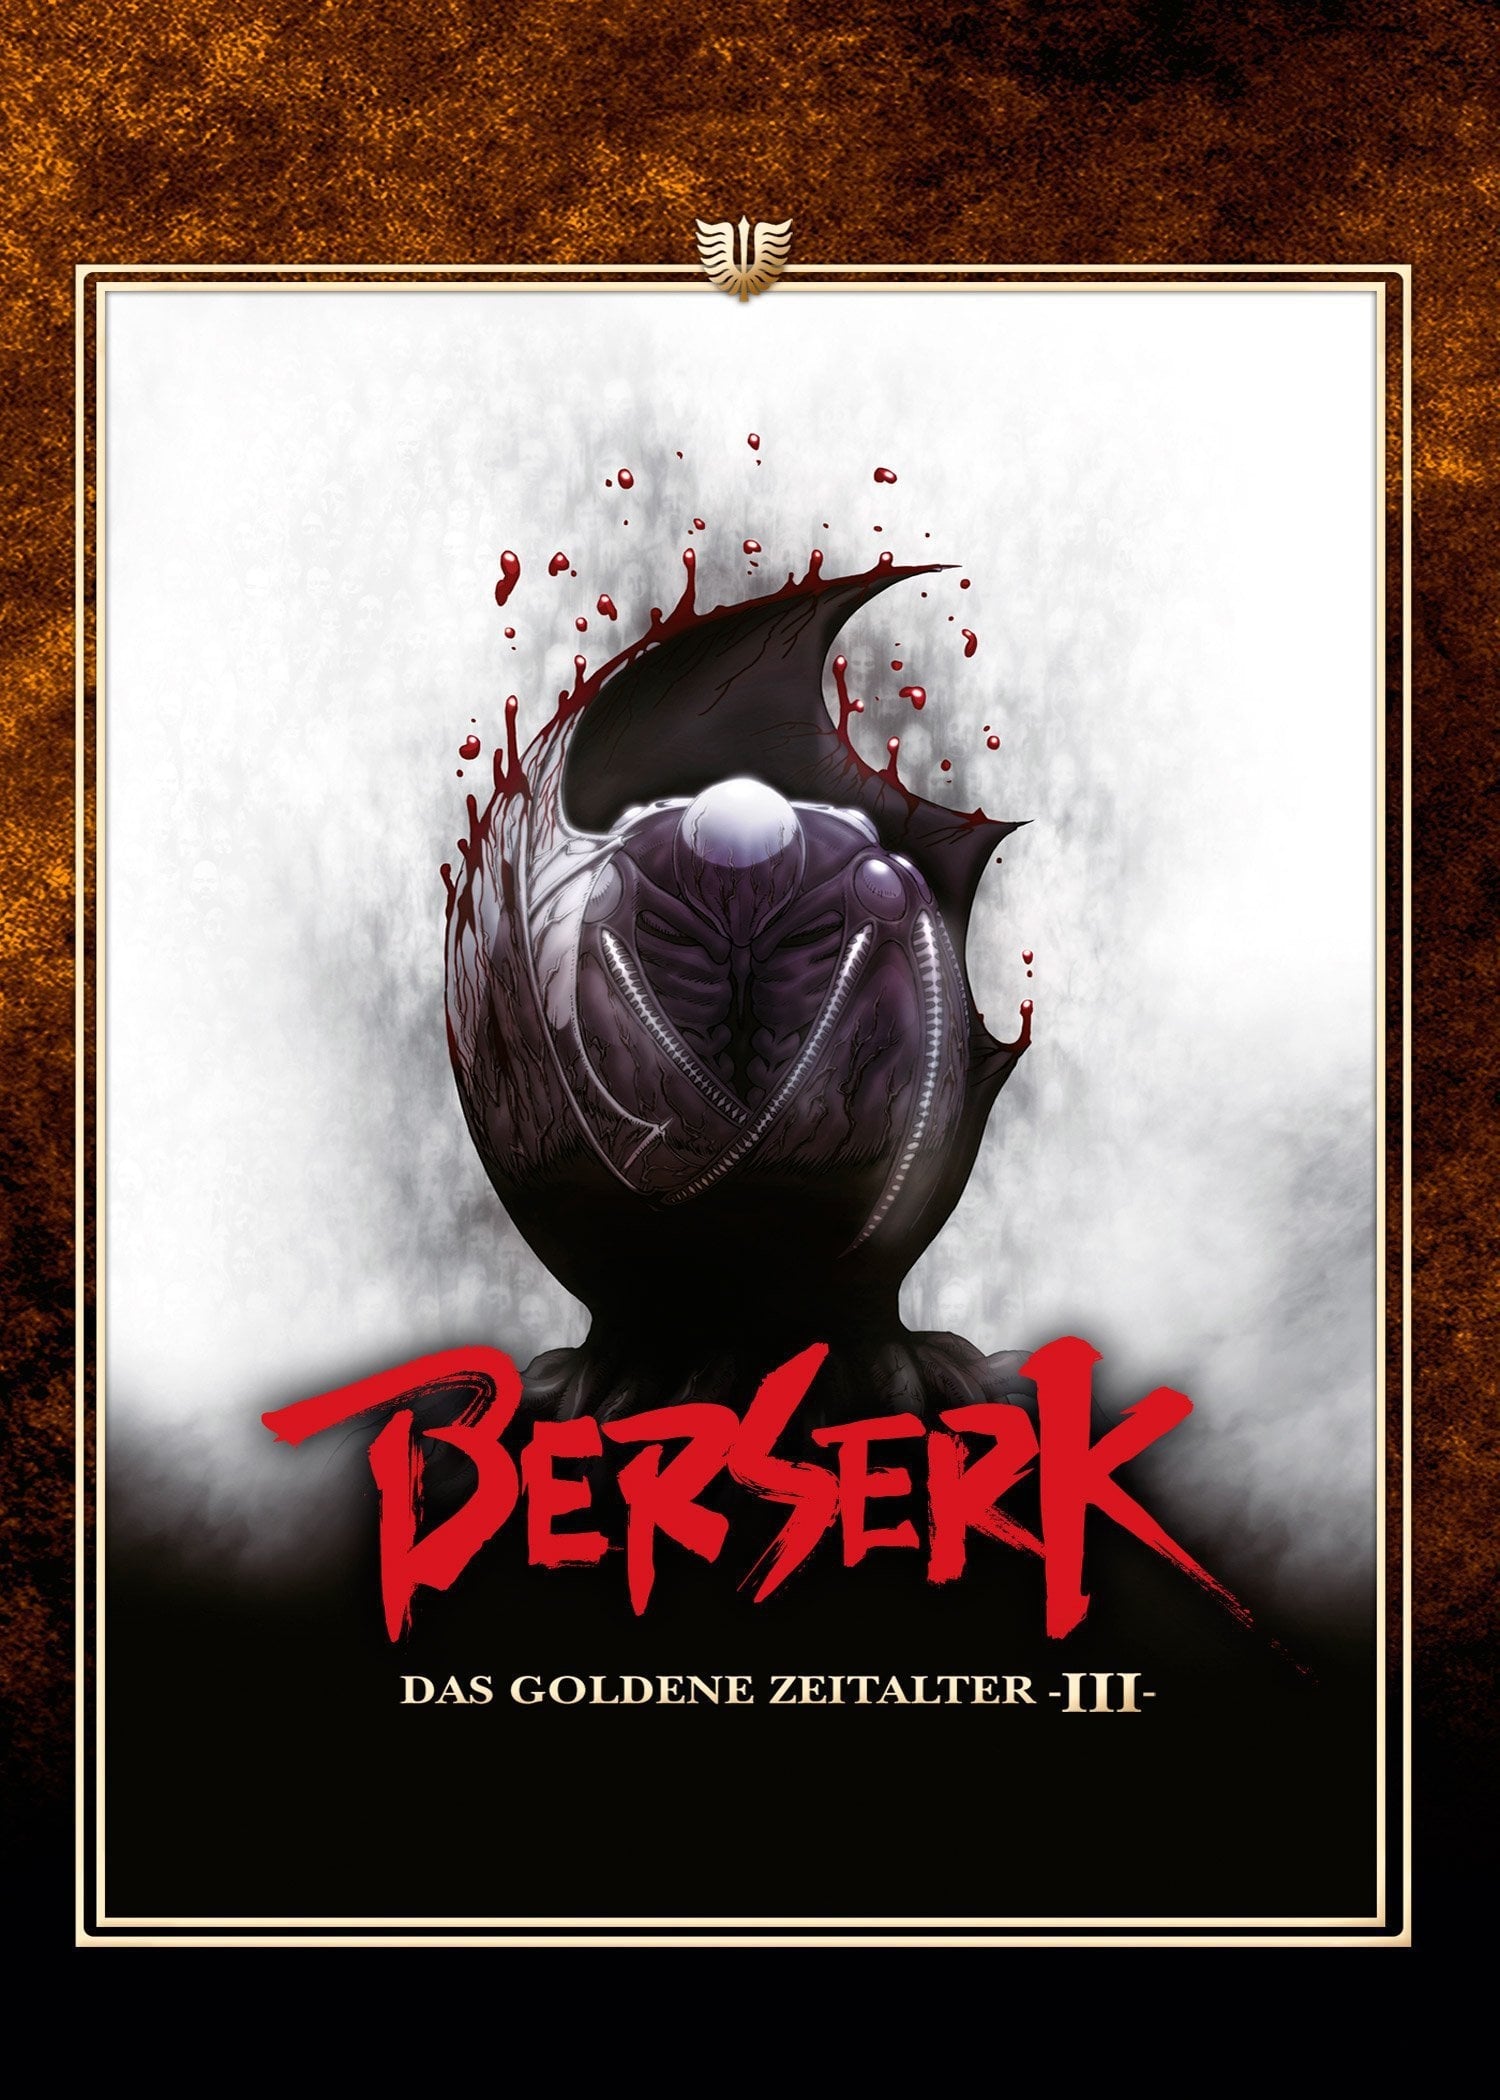 Plakat von "Berserk - Das goldene Zeitalter III"